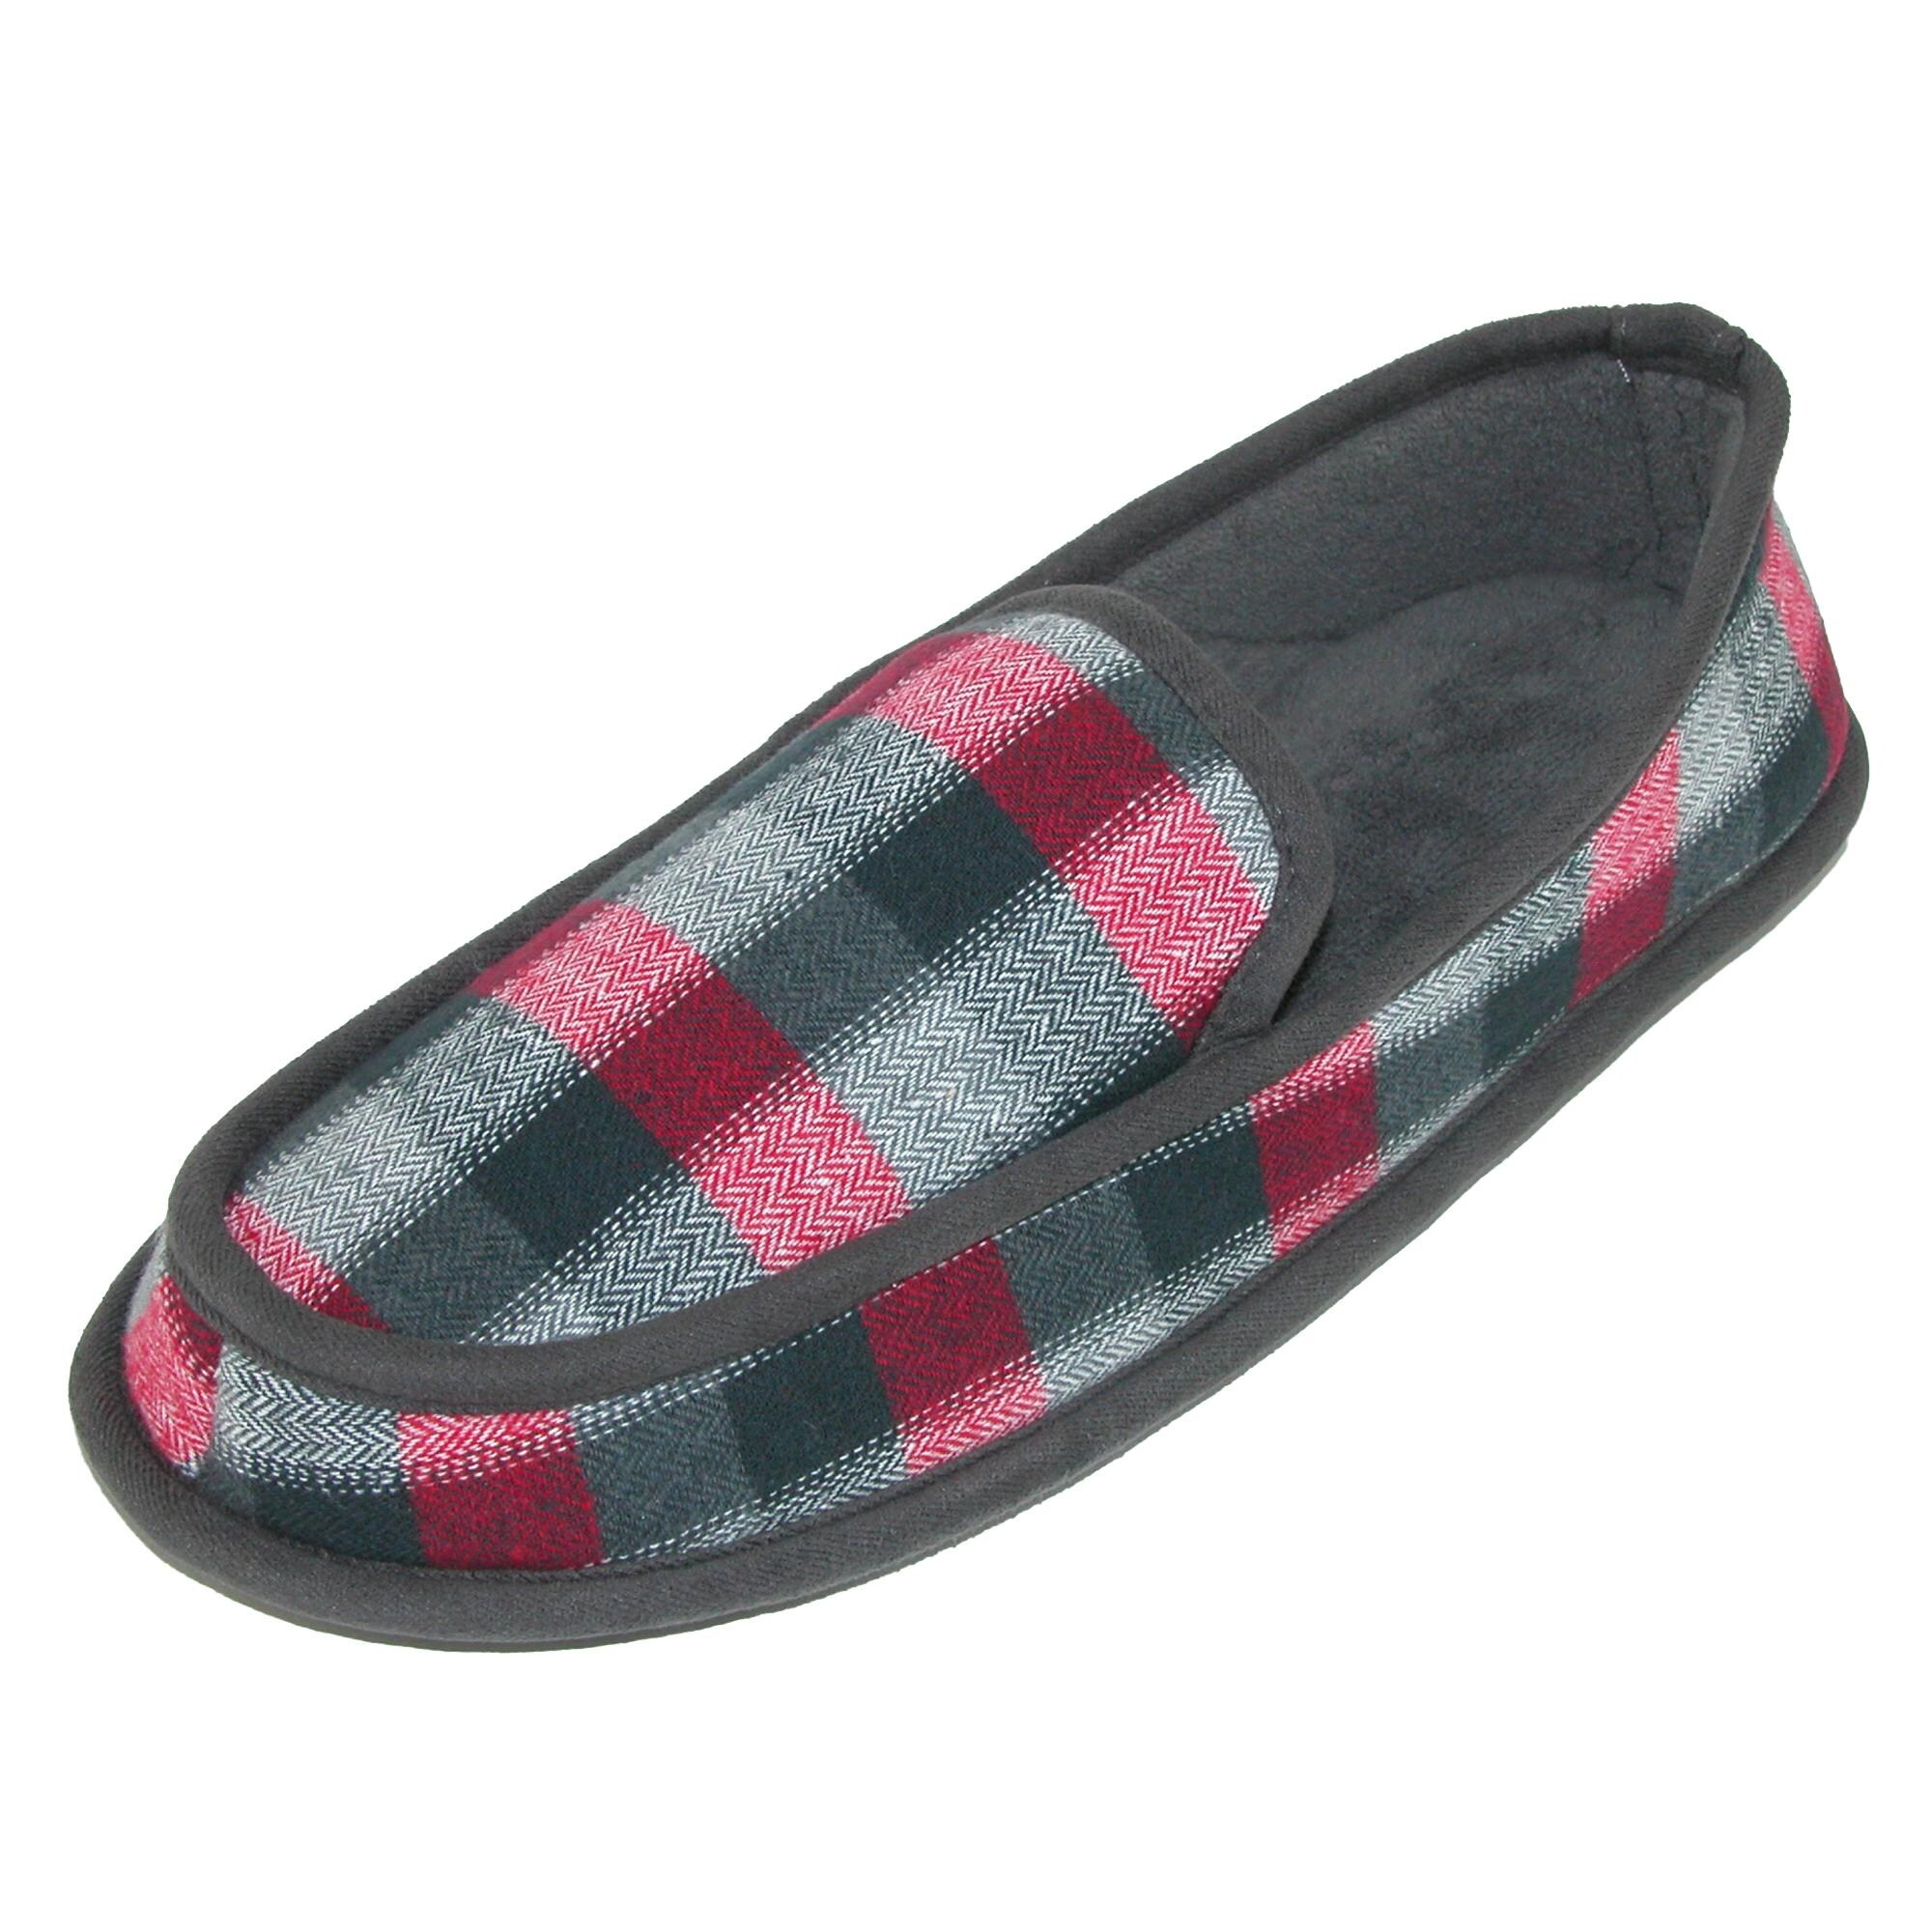 dearfoam mens moccasin slippers